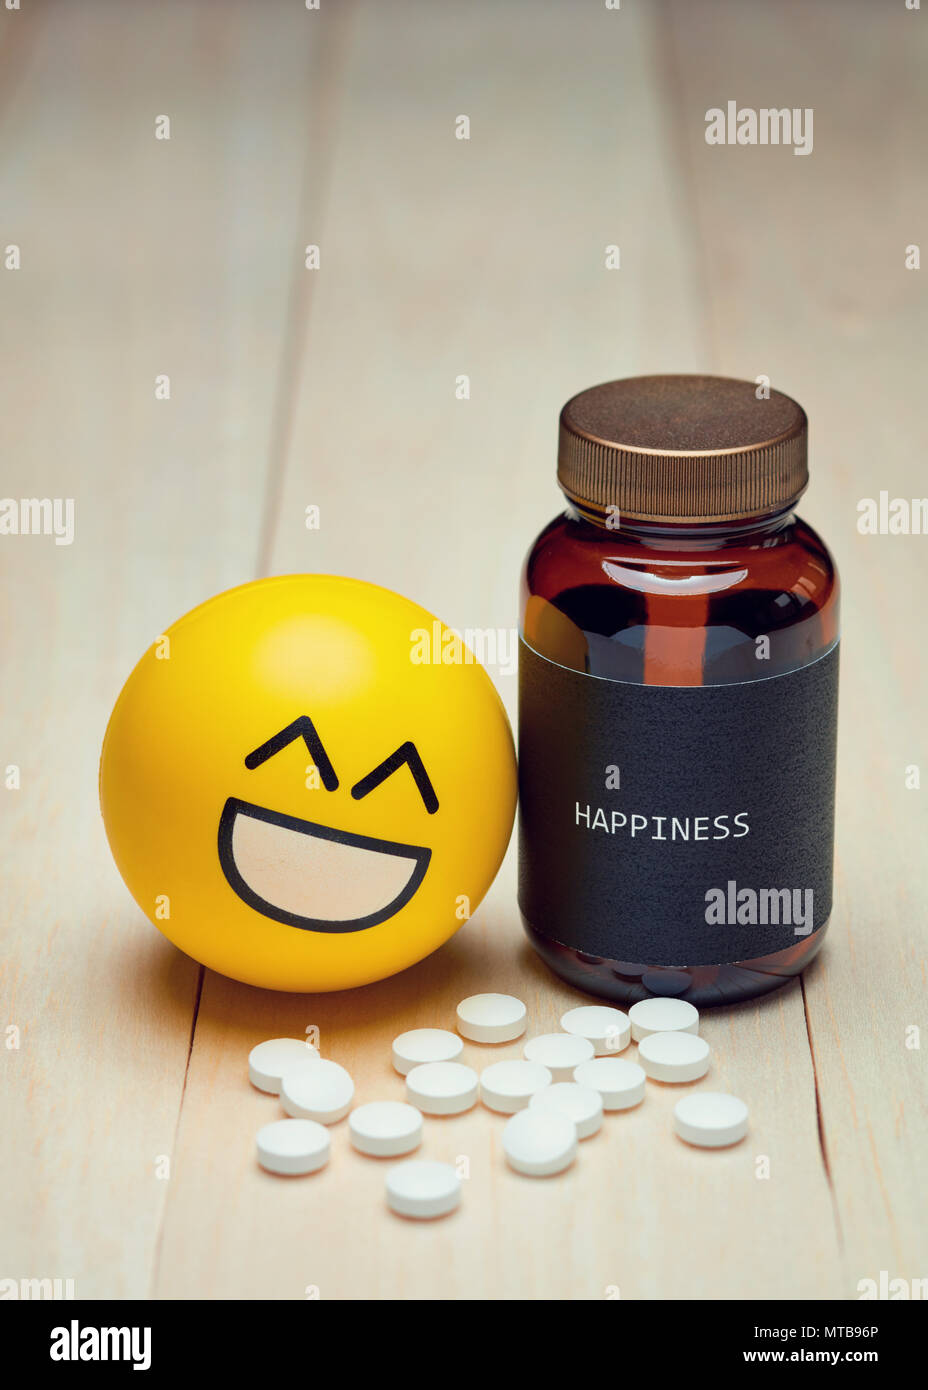 Les Anti-dépresseurs et de bonheur. Sourire jaune à côté d'emoji un médicament contenant avec une étiquette noire bonheur écrit sur elle. Pilules blanches sur la table. Banque D'Images